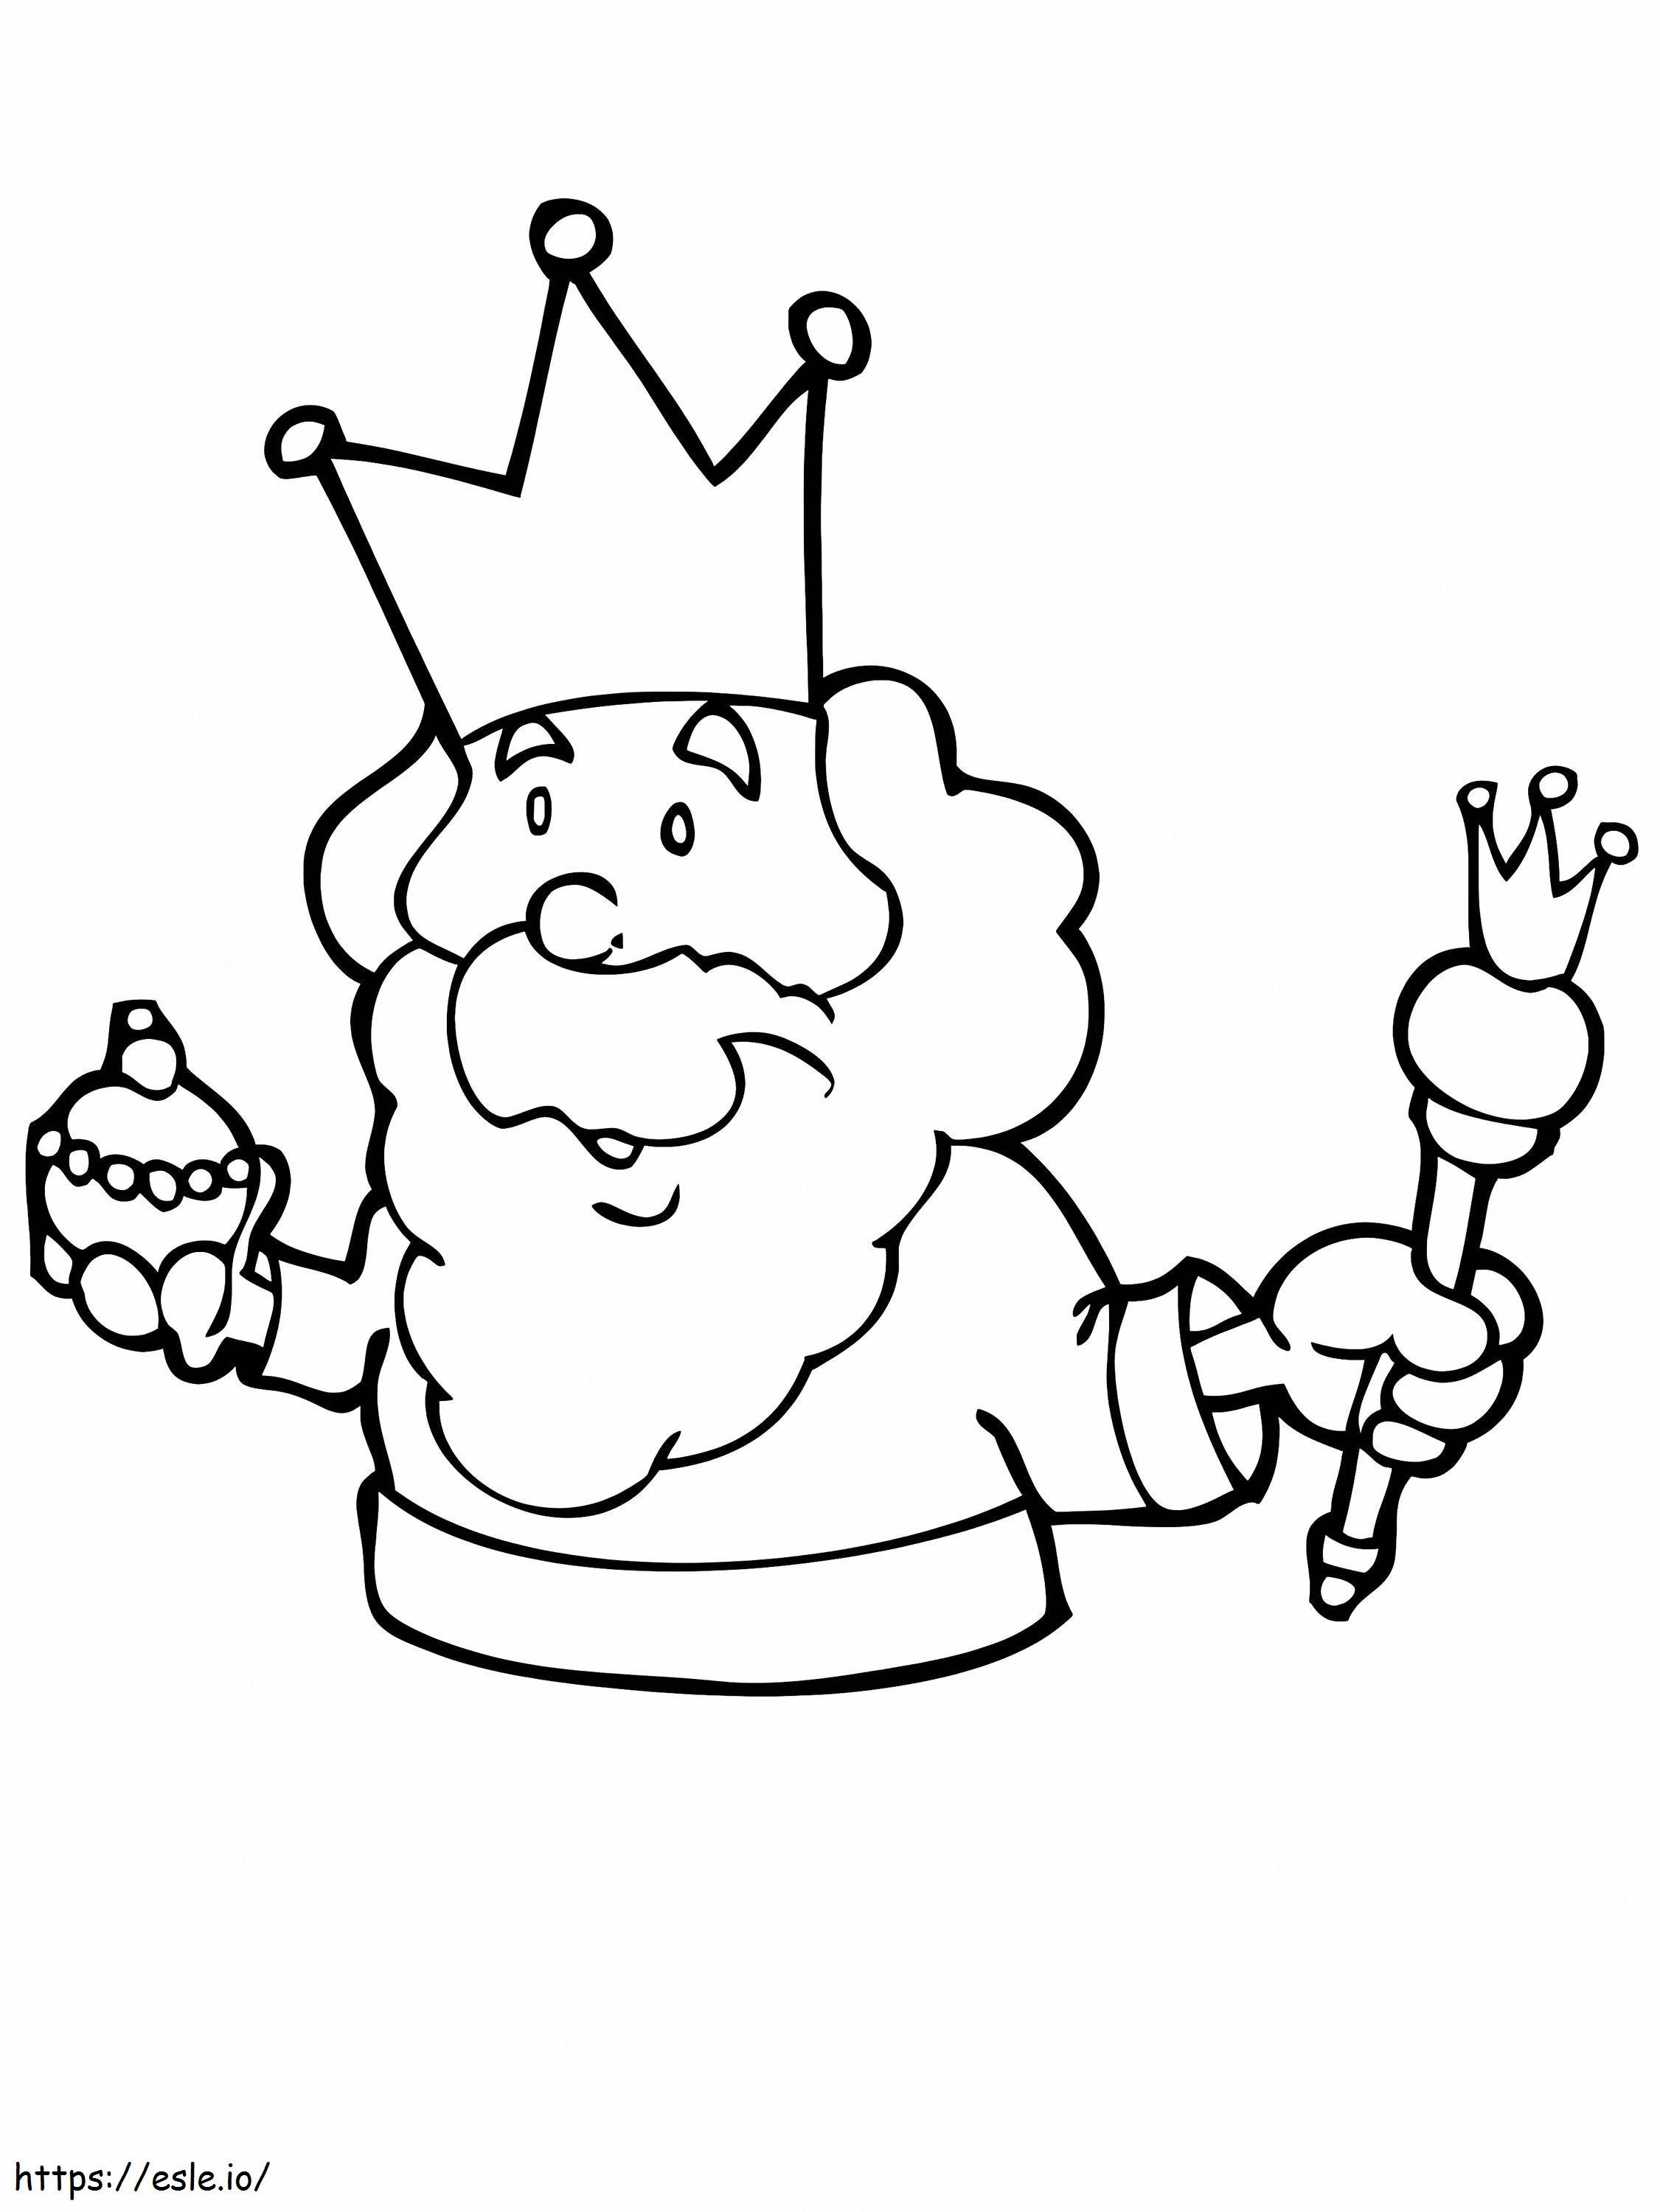 König und Cupcake ausmalbilder